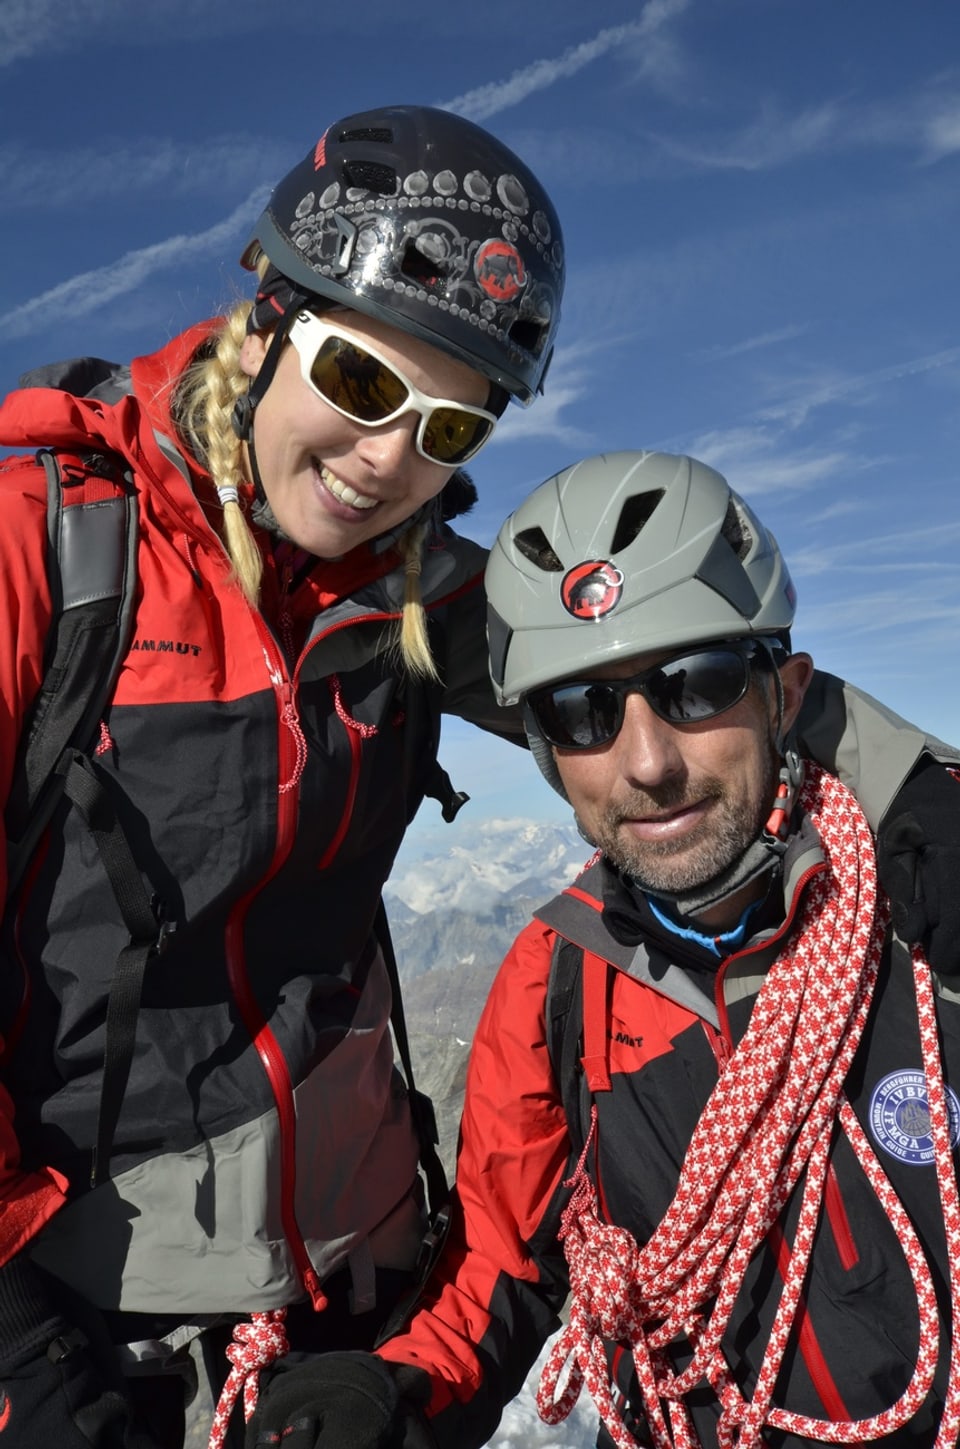 Linda Fäh und ein Bergführer posieren gemeinsam für ein Gipfelfoto auf dem Matterhorn.